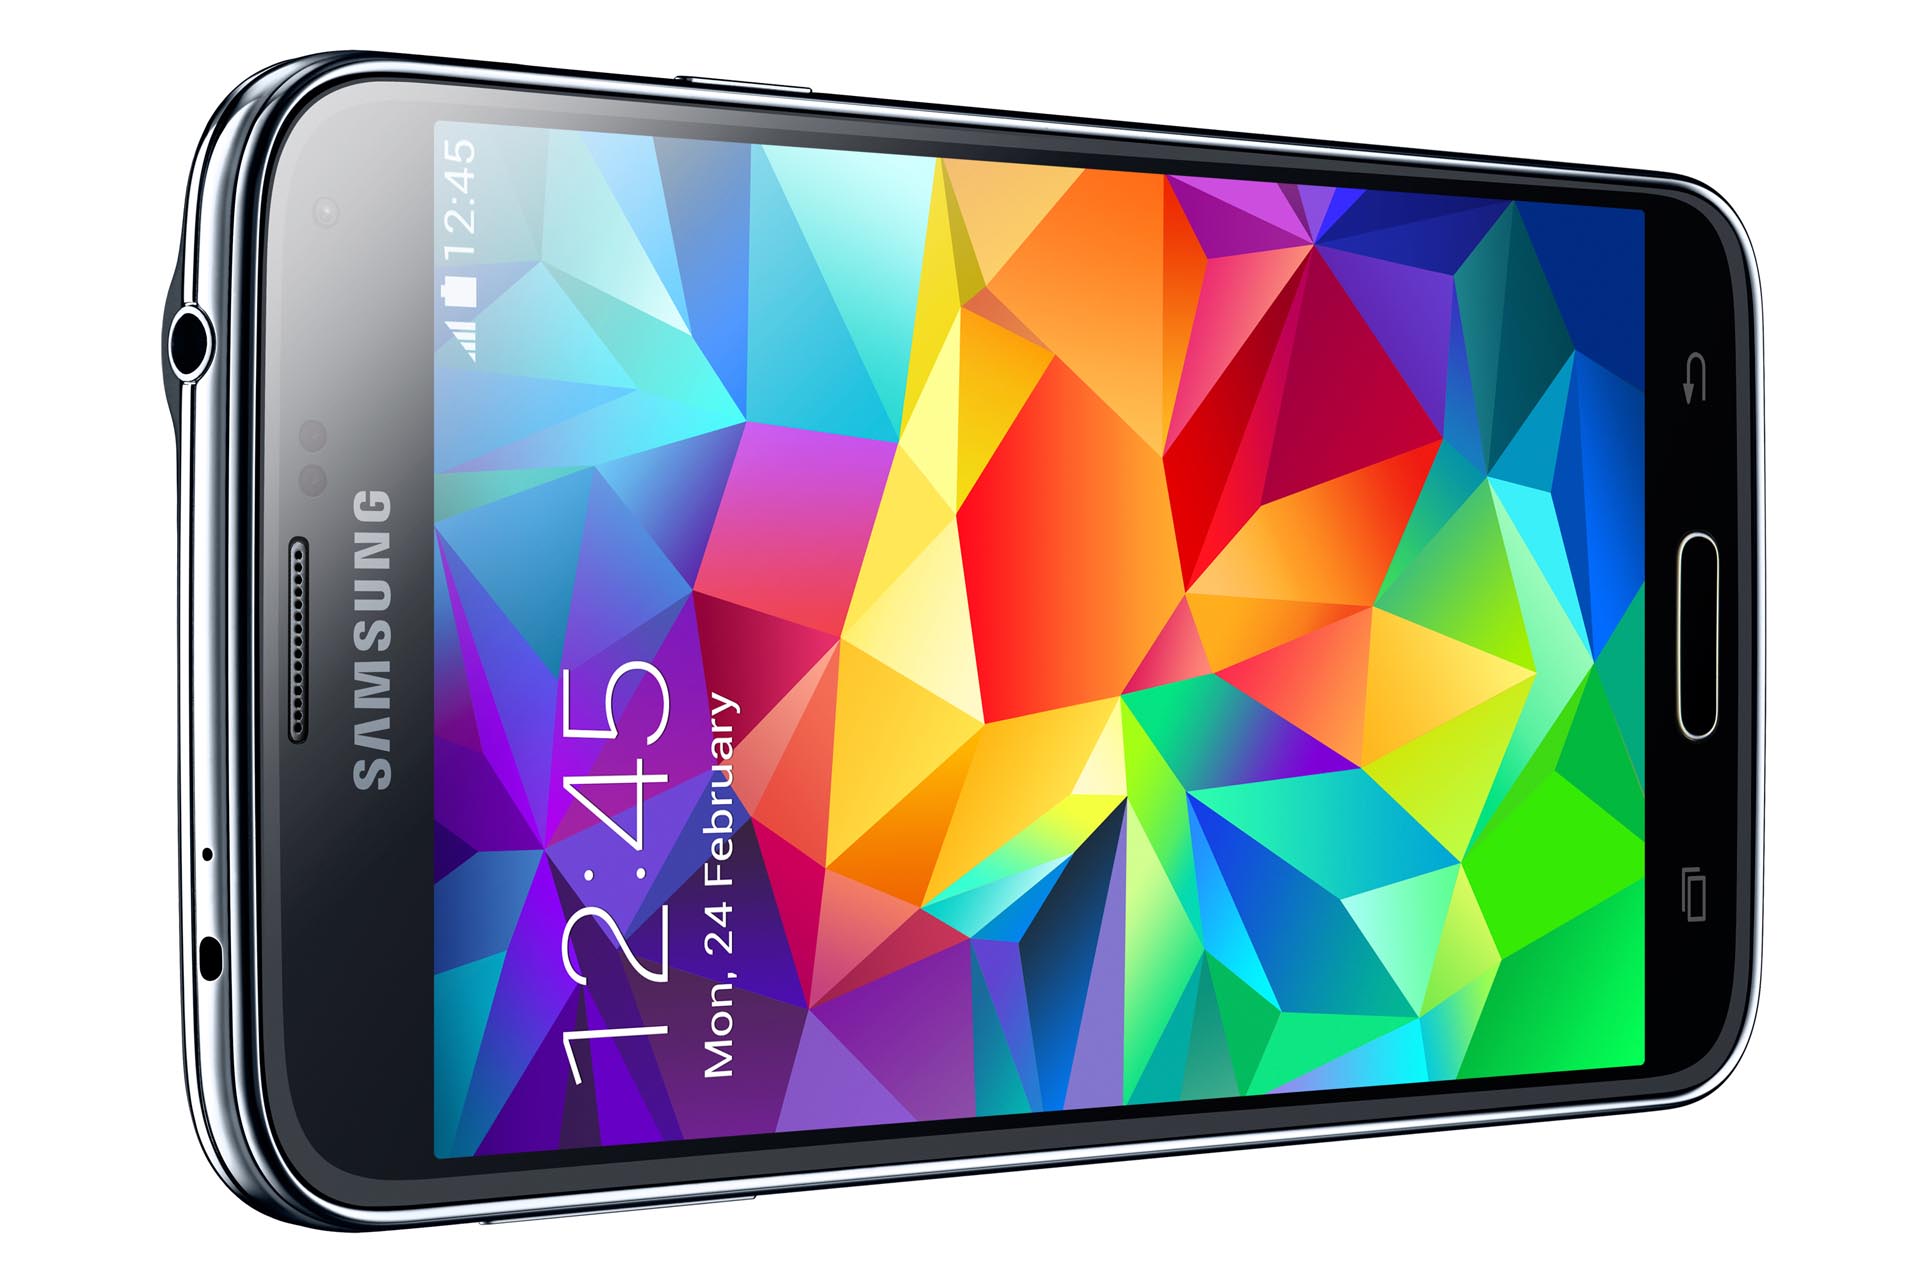 Samsung Galaxy S5 - Klinkenanschluss